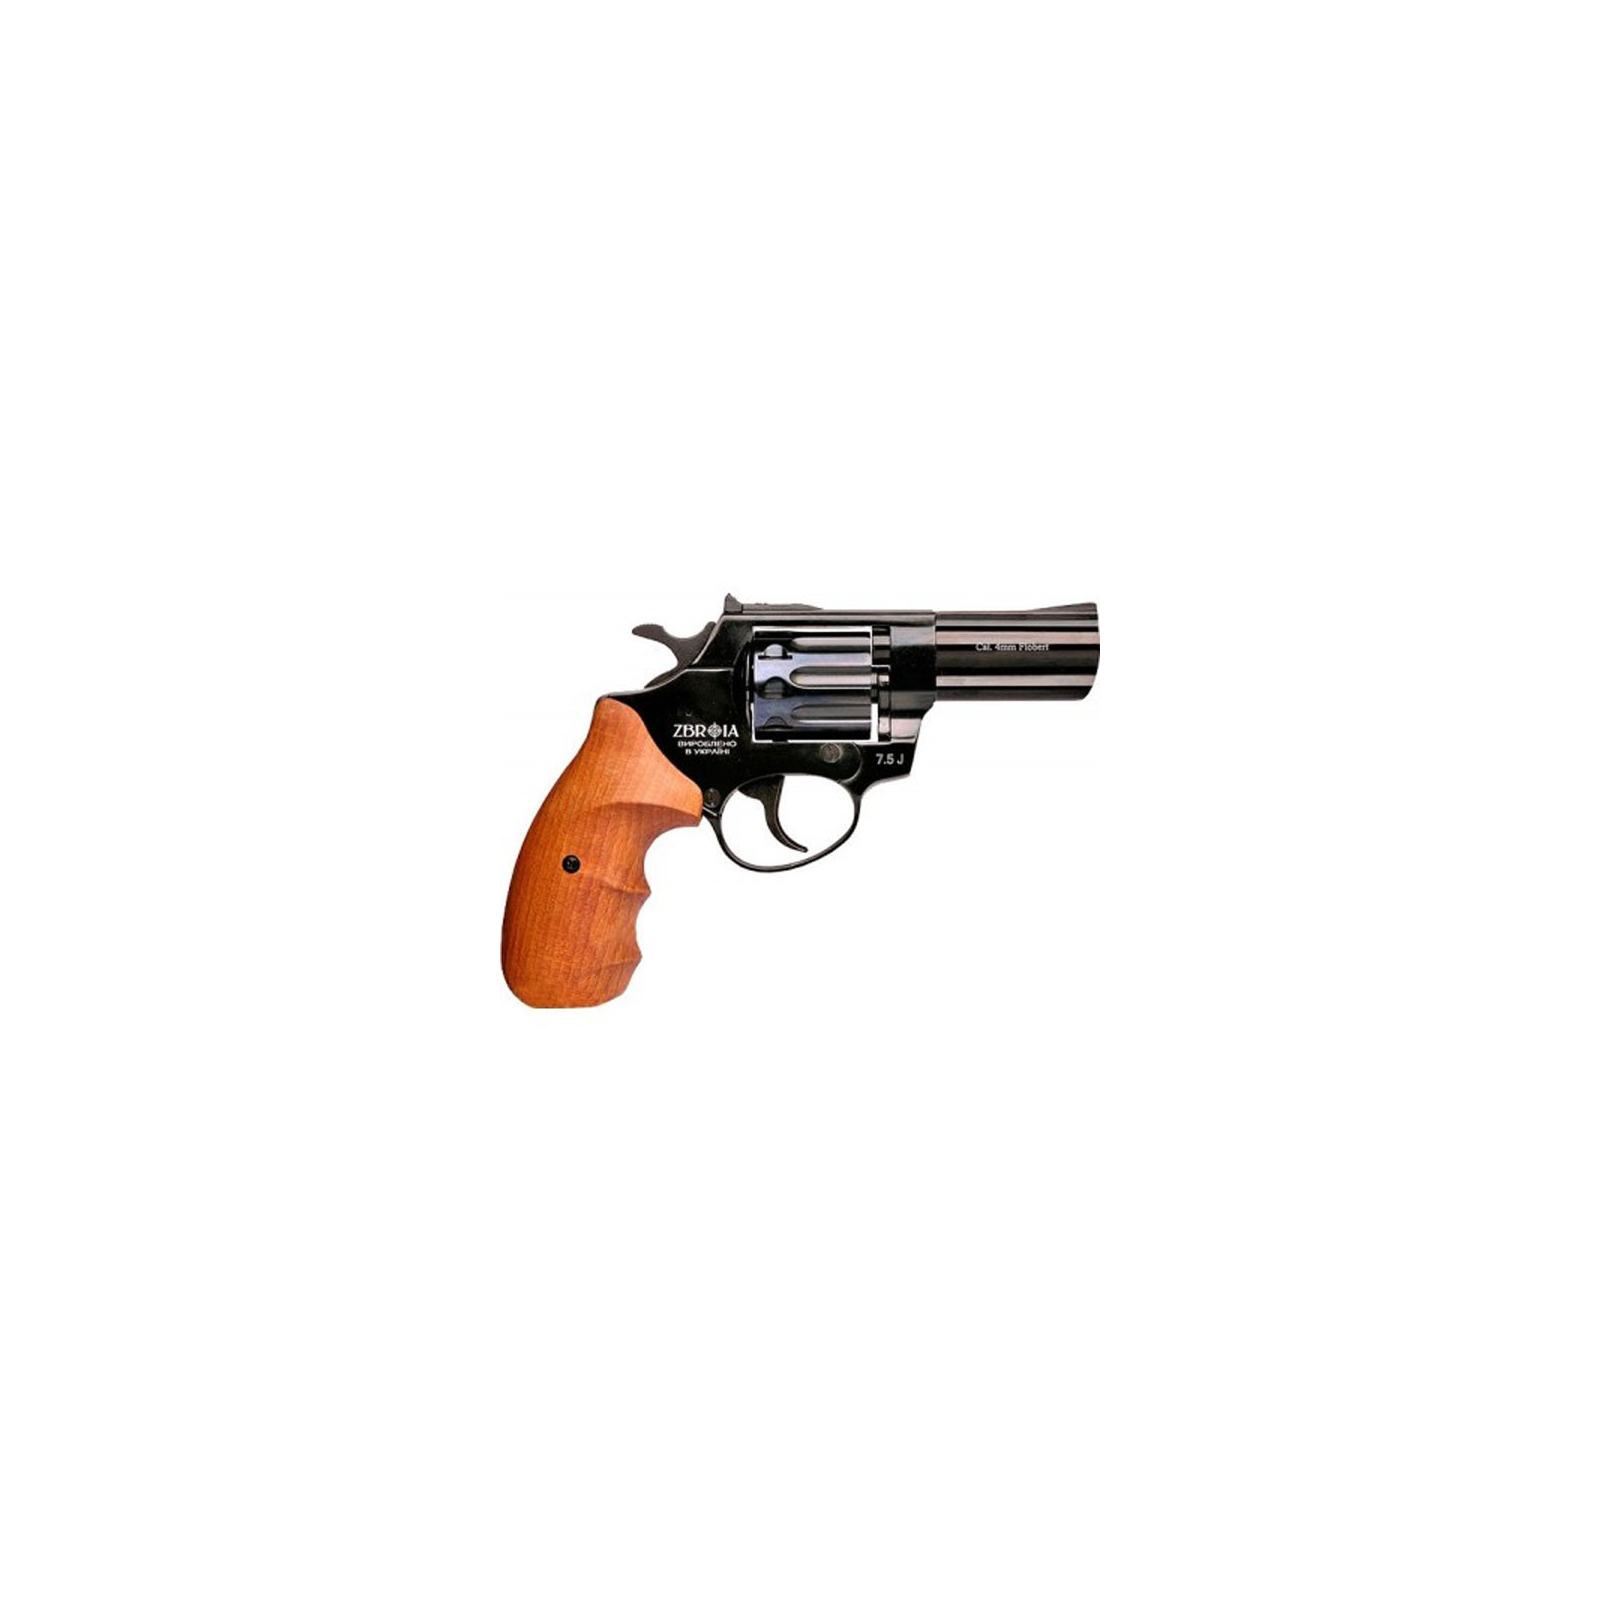 Револьвер под патрон Флобера ZBROIA Profi 3" (черный/бук) (3726.00.19)